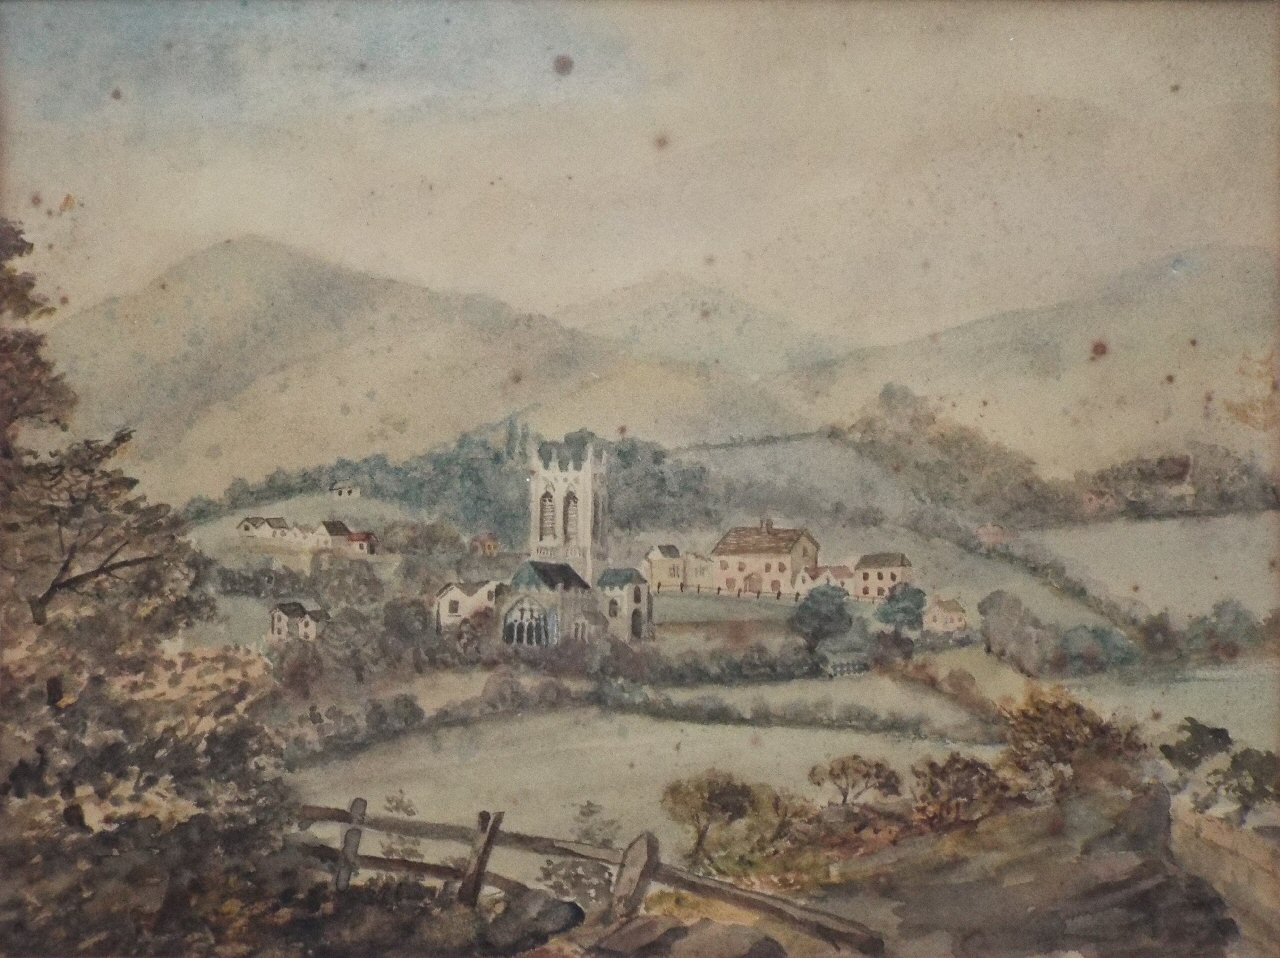 Watercolour - Malvern - c. 1790